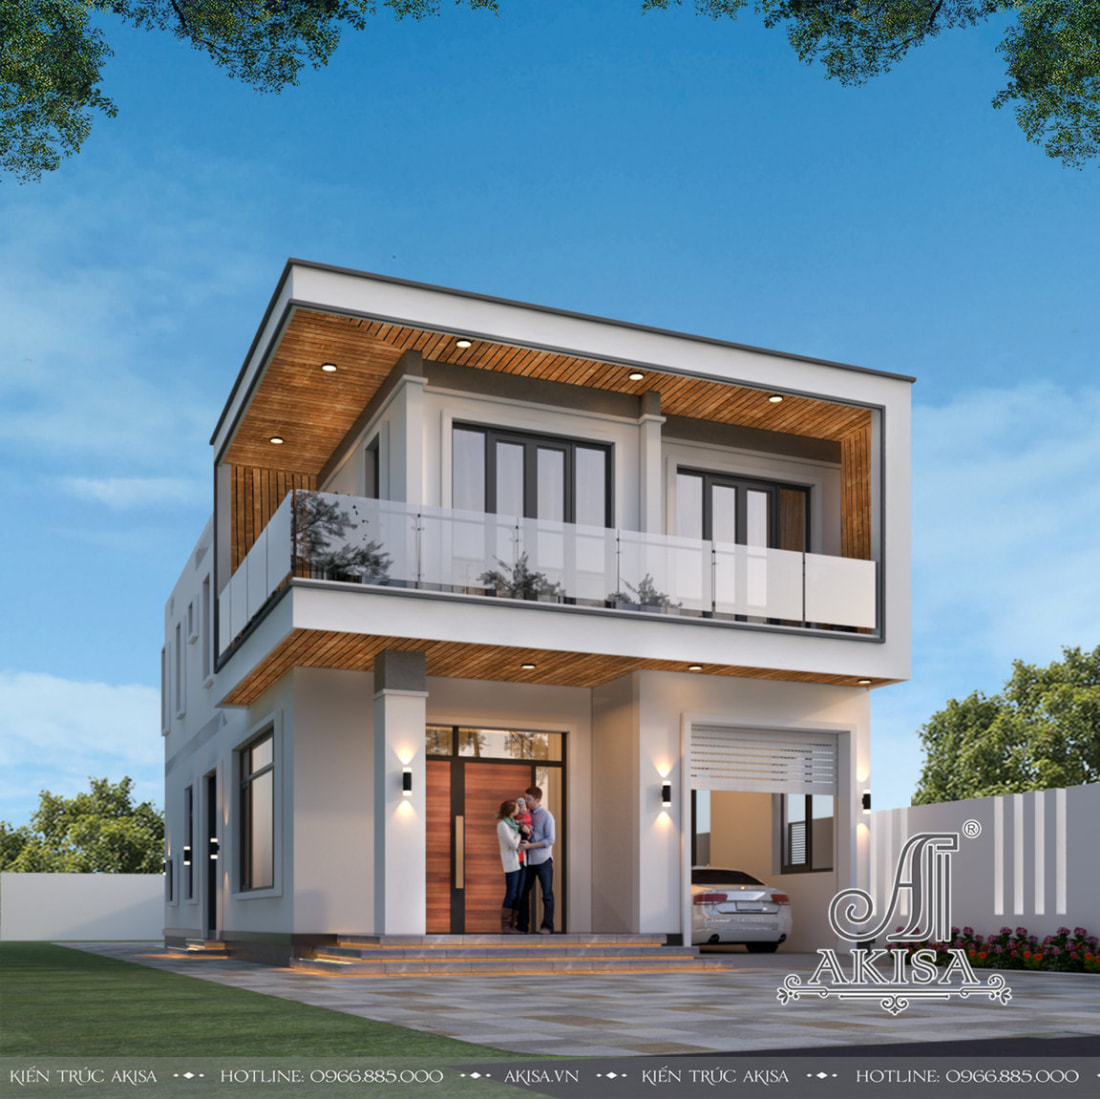 Thiết kế nhà 2 tầng mái bằng đẹp đáp ứng nhu cầu về một không gian sống thẩm mỹ, tiện nghi, phù hợp với lối sống ở nông thôn